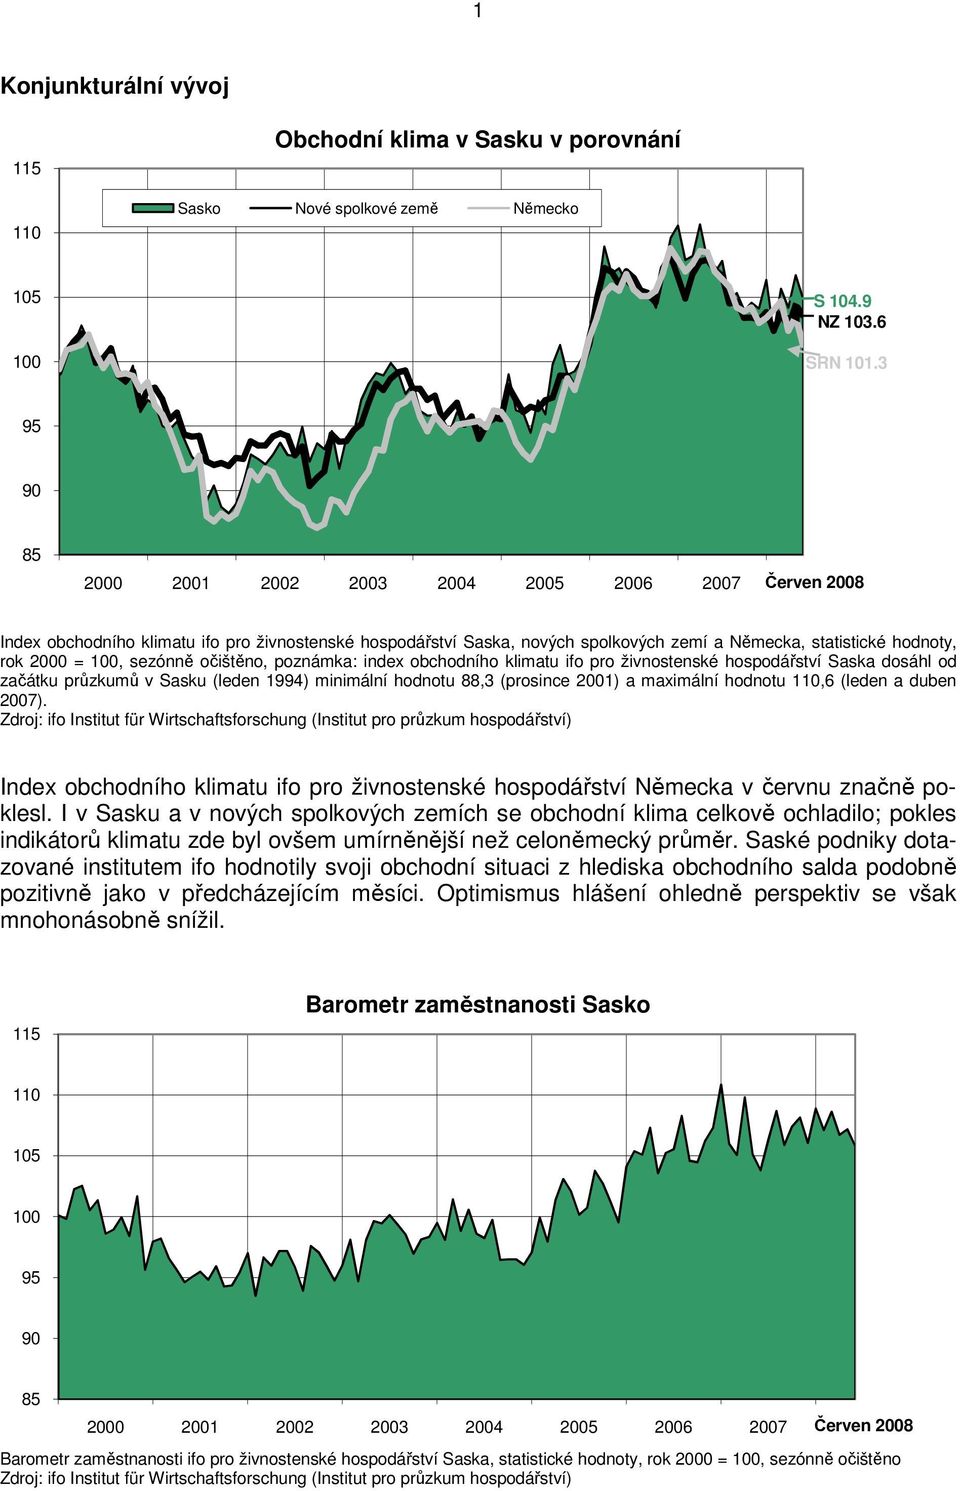 očištěno, poznámka: index obchodního klimatu ifo pro živnostenské hospodářství Saska dosáhl od začátku průzkumů v Sasku (leden 1994) minimální hodnotu 88,3 (prosince 2001) a maximální hodnotu 110,6